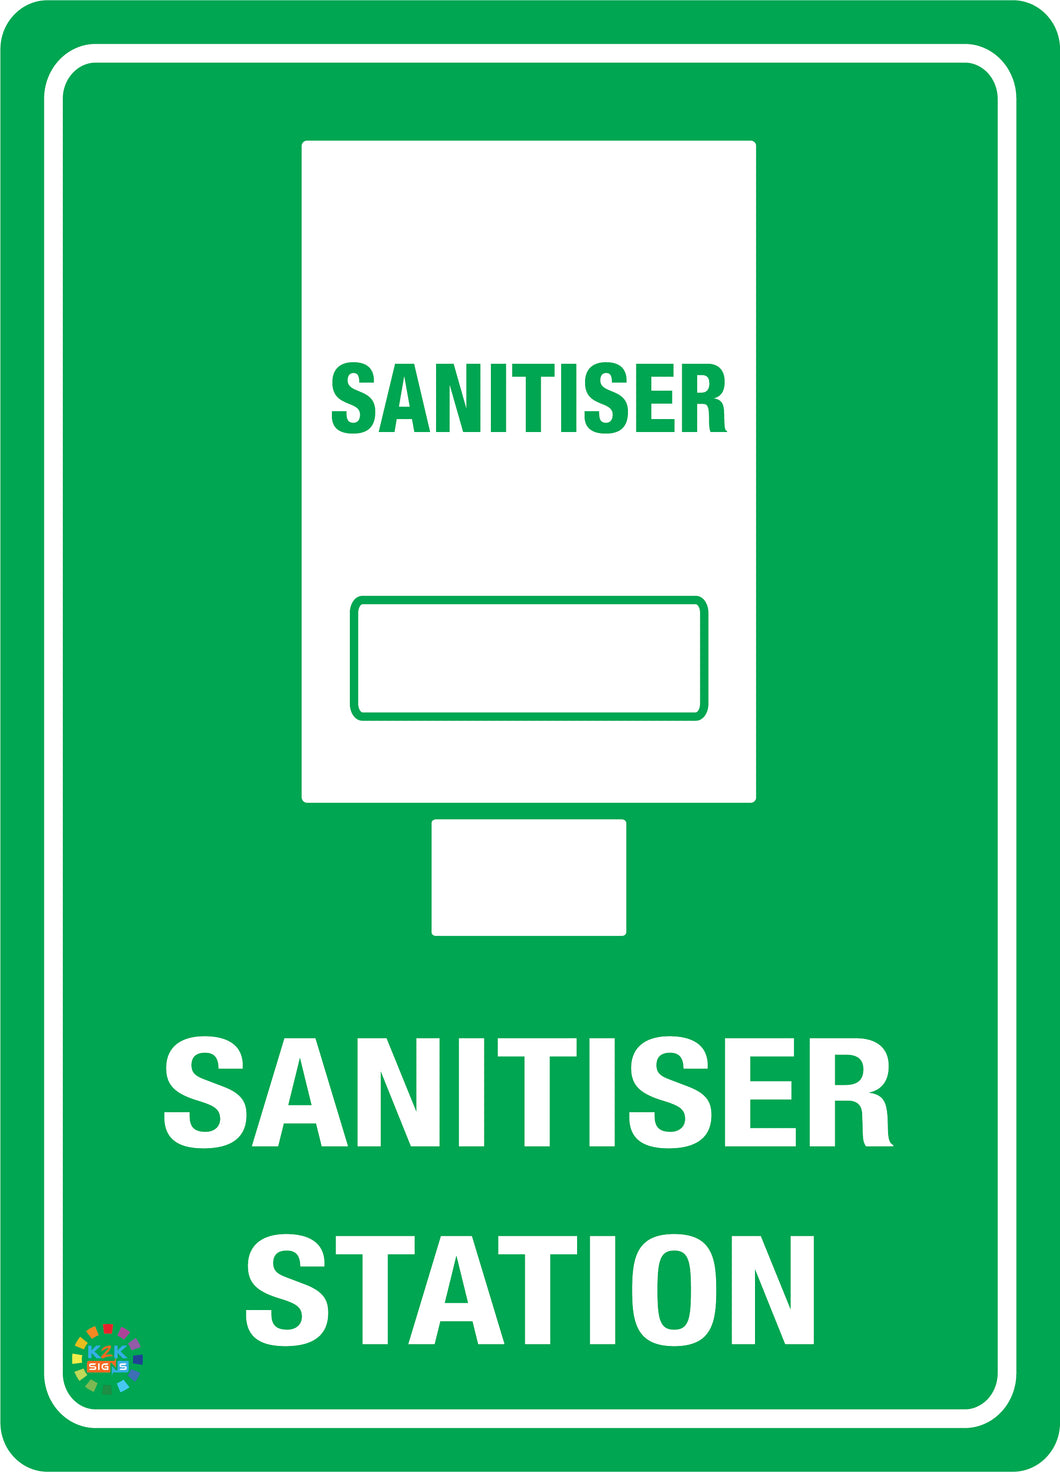 Sanitiser Station